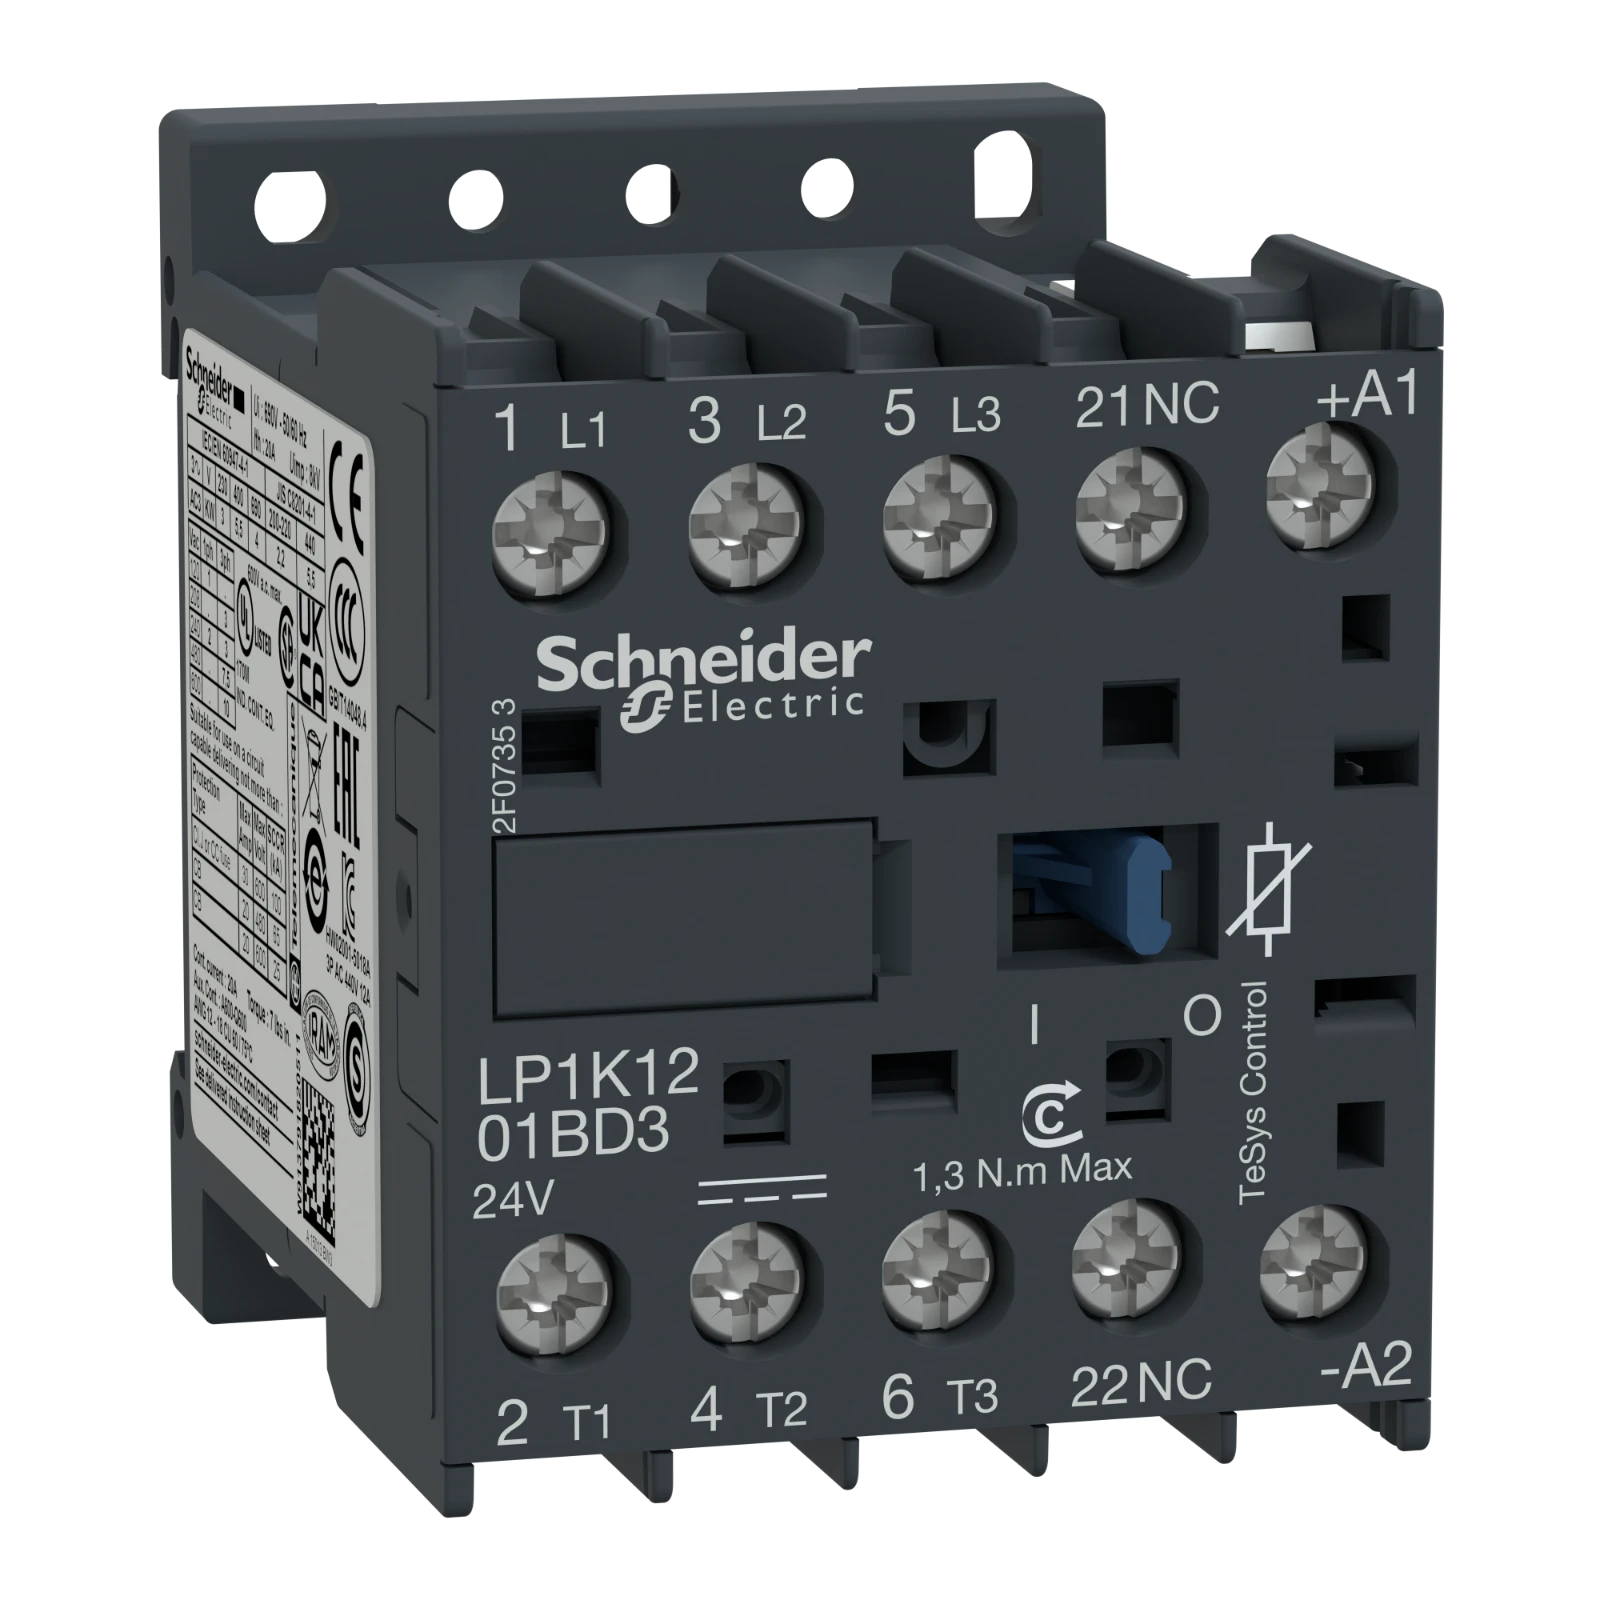 2339718 - Schneider Electric LP1K1201BD3